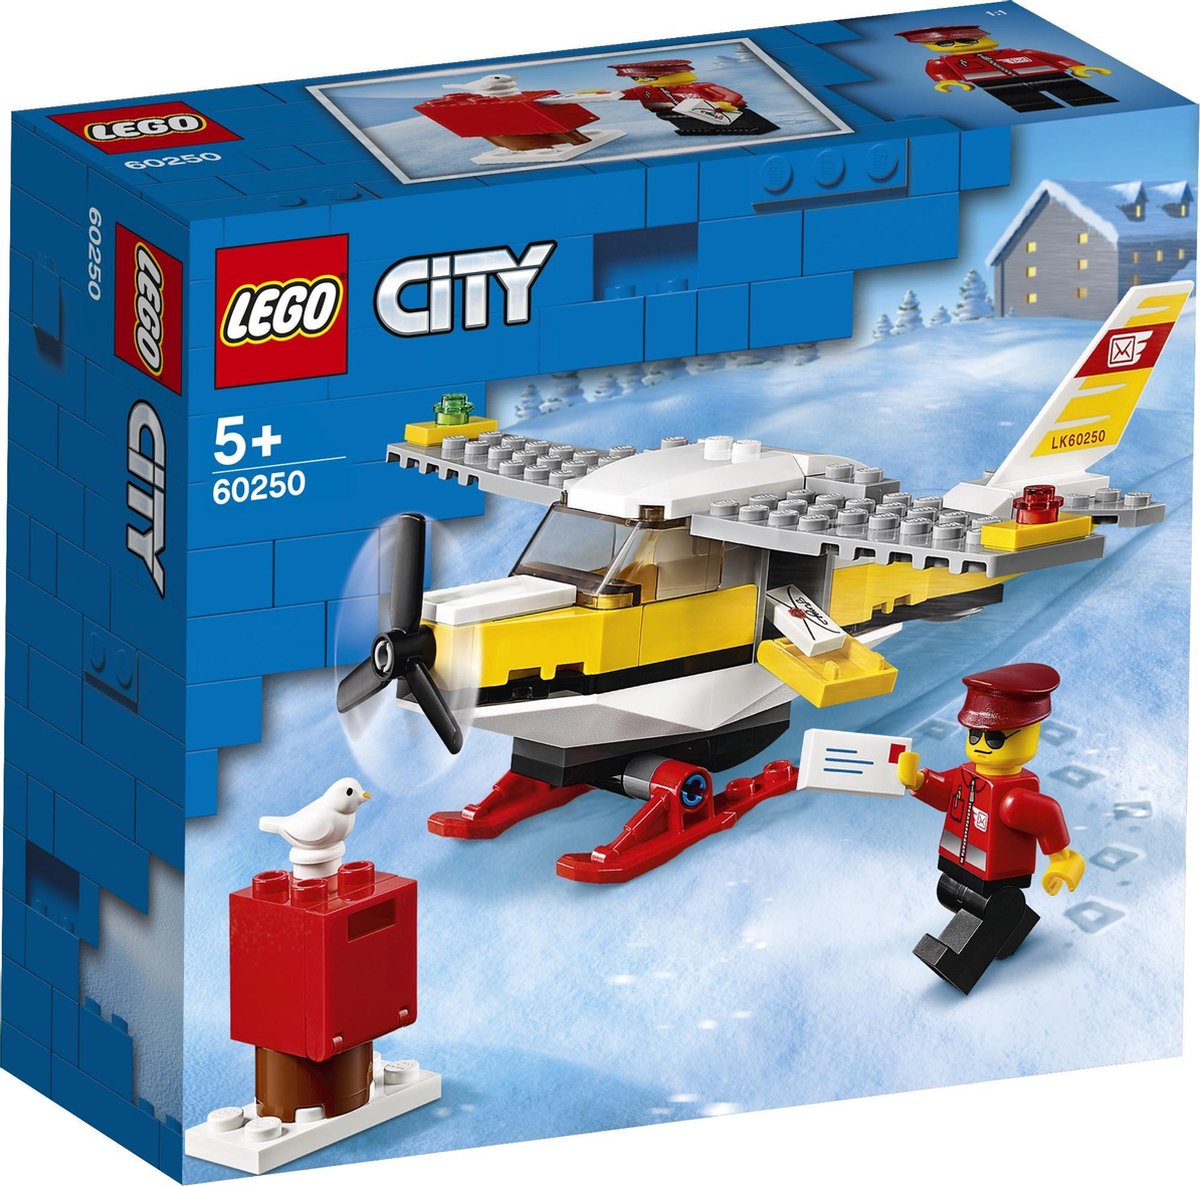 LEGO City Postvliegtuig - 60250 | bol.com